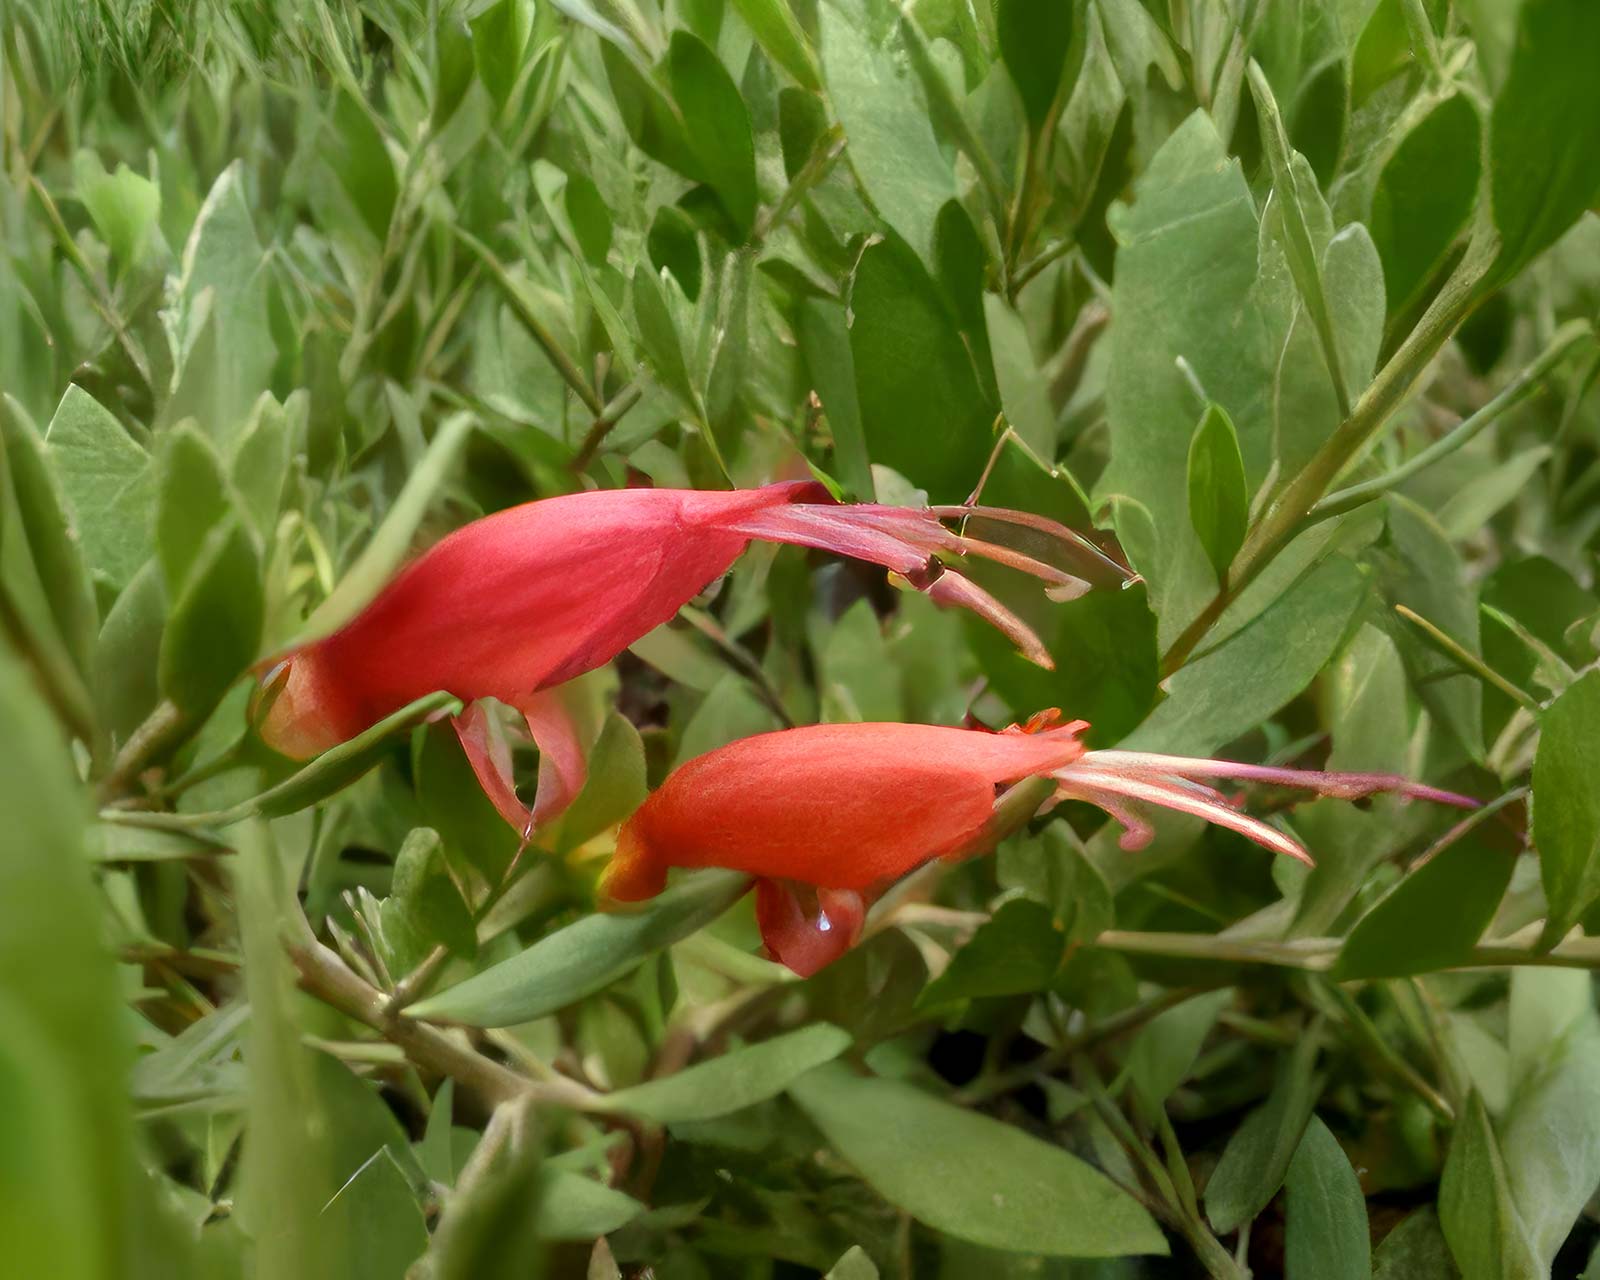 Eremophila glabra 'Rottnest'. - the flowers of Rottnest Red Desert are a deeper red